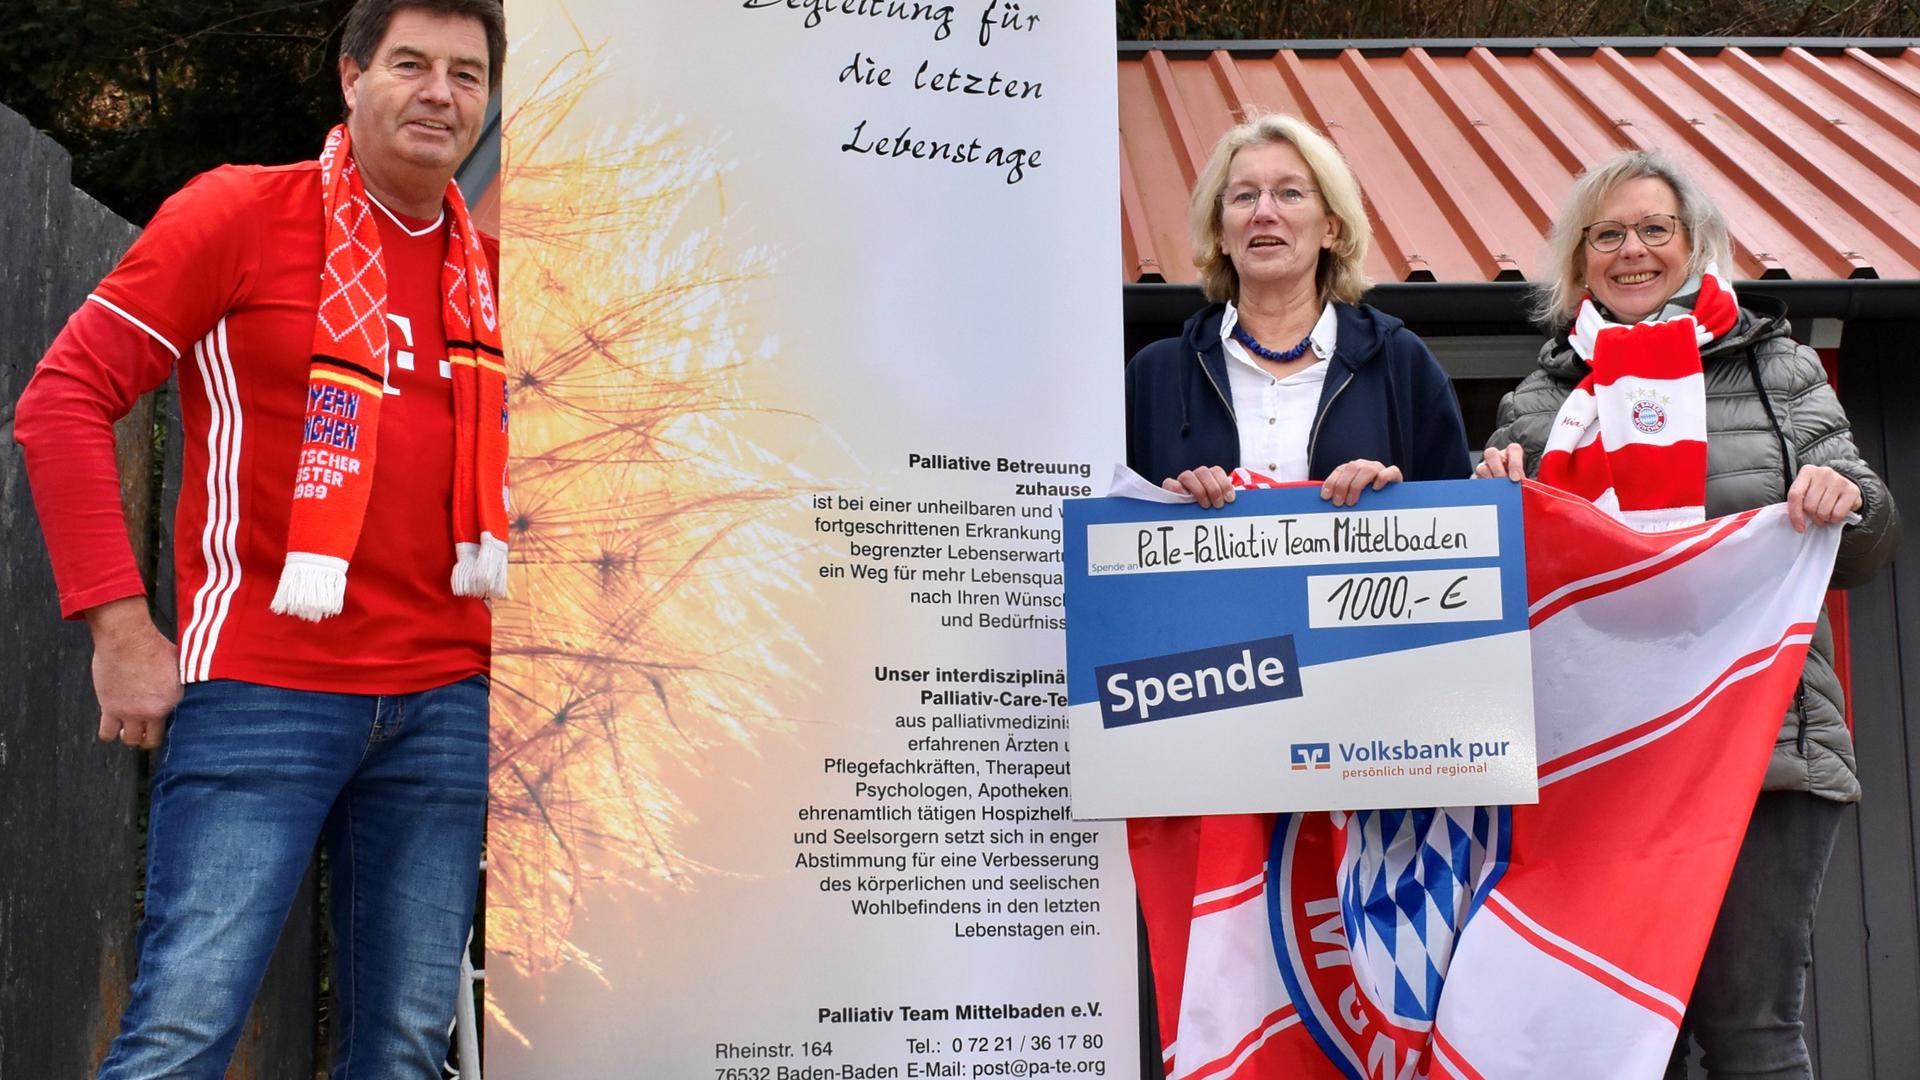 Bei der Übergabe der Spende sprechen Angehörige Dietmar Oser (links) und Brigitte Mast (rechts) mit Elke Fischer (2.vr.) über ihre Erfahrungen mit dem Palliativteam.